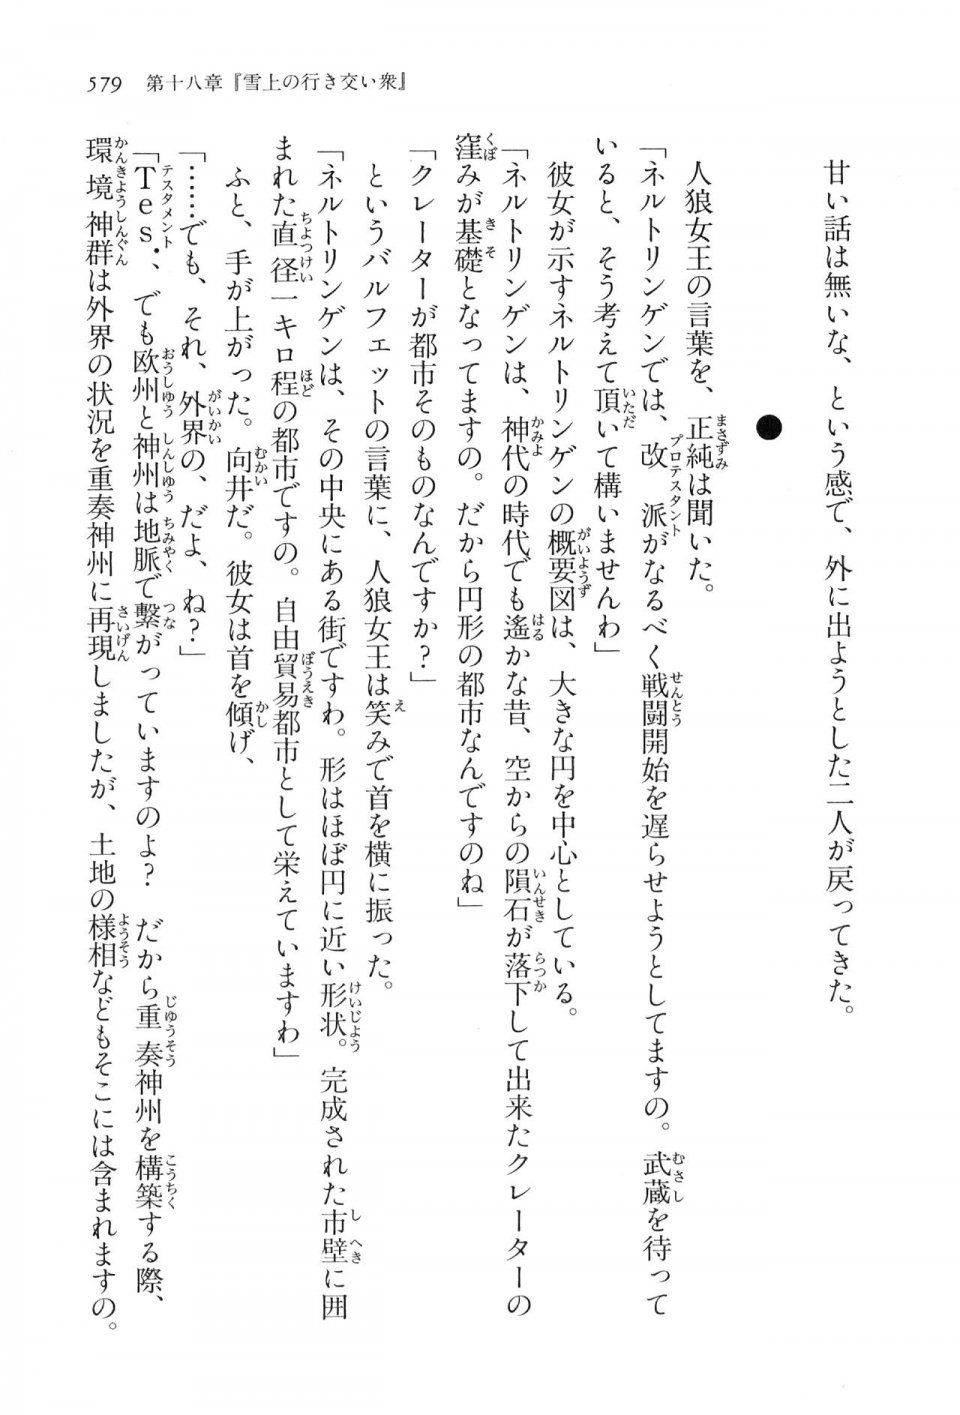 Kyoukai Senjou no Horizon LN Vol 16(7A) - Photo #579